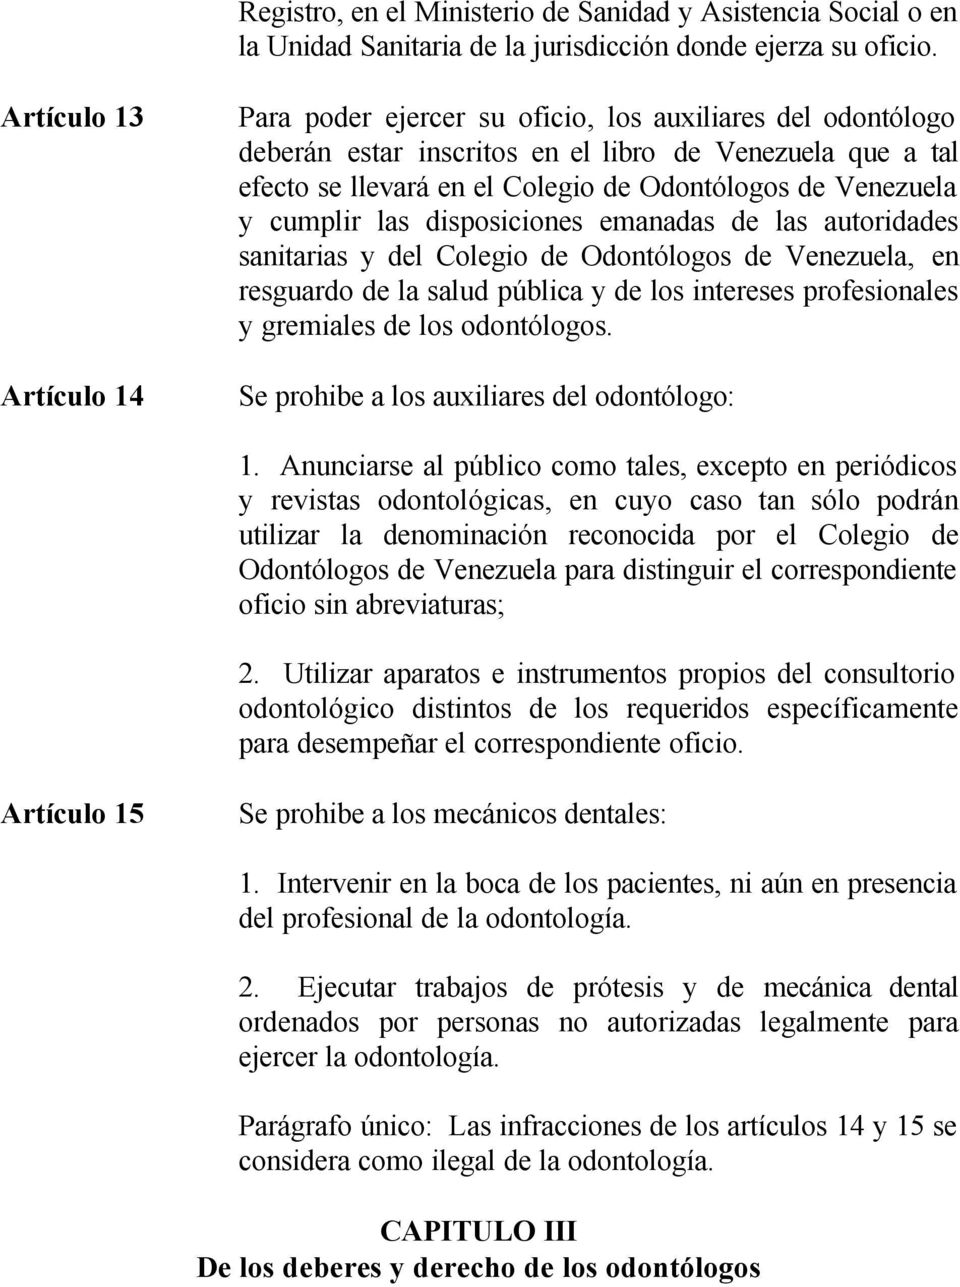 Venezuela y cumplir las disposiciones emanadas de las autoridades sanitarias y del Colegio de Odontólogos de Venezuela, en resguardo de la salud pública y de los intereses profesionales y gremiales